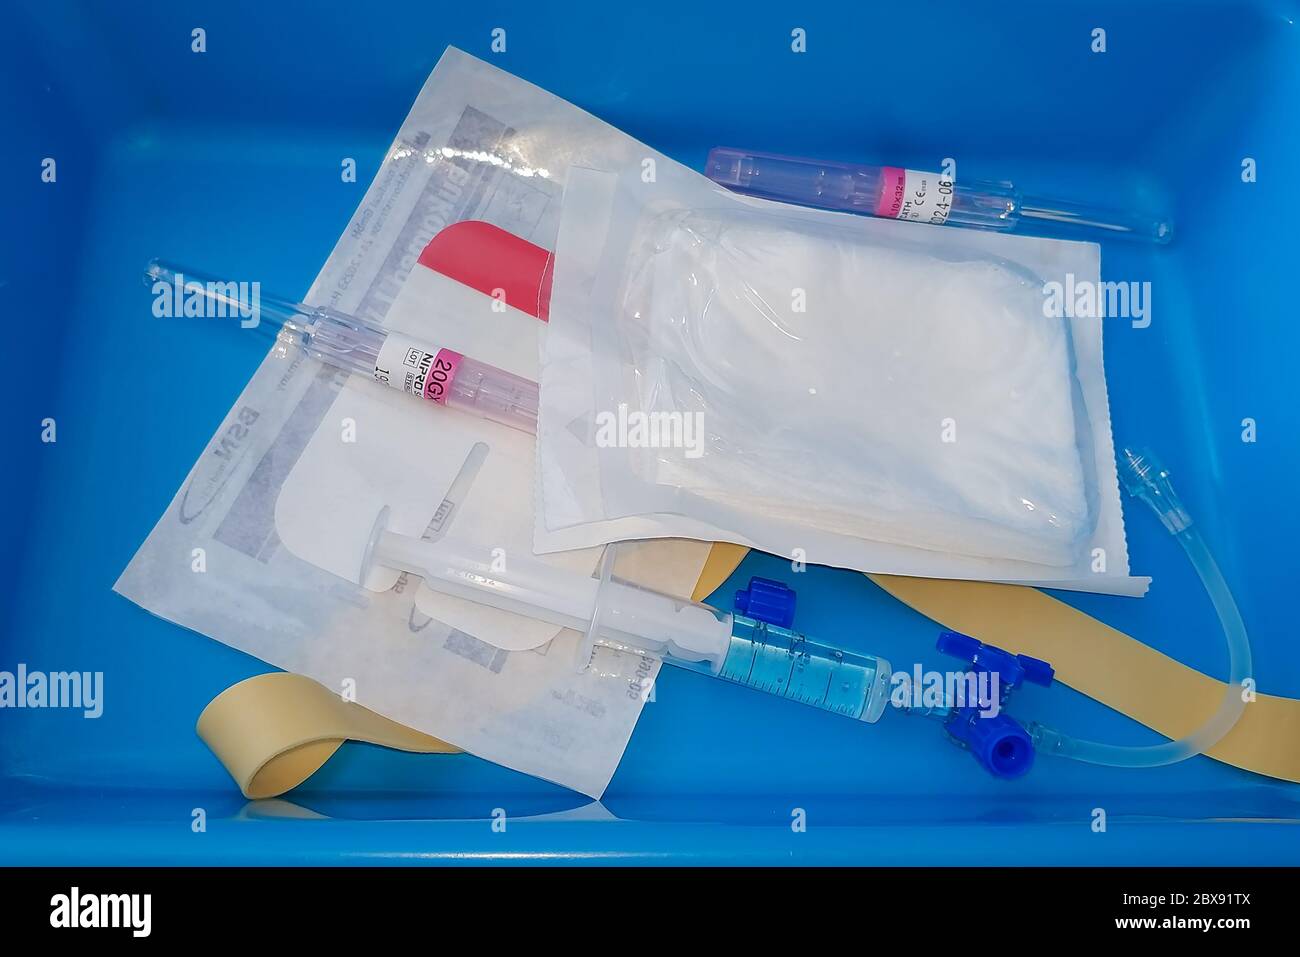 Huelva, Spagna - 6 giugno 2020: Un vassoio di cannula endovenosa pronto per l'uso con un paziente Foto Stock